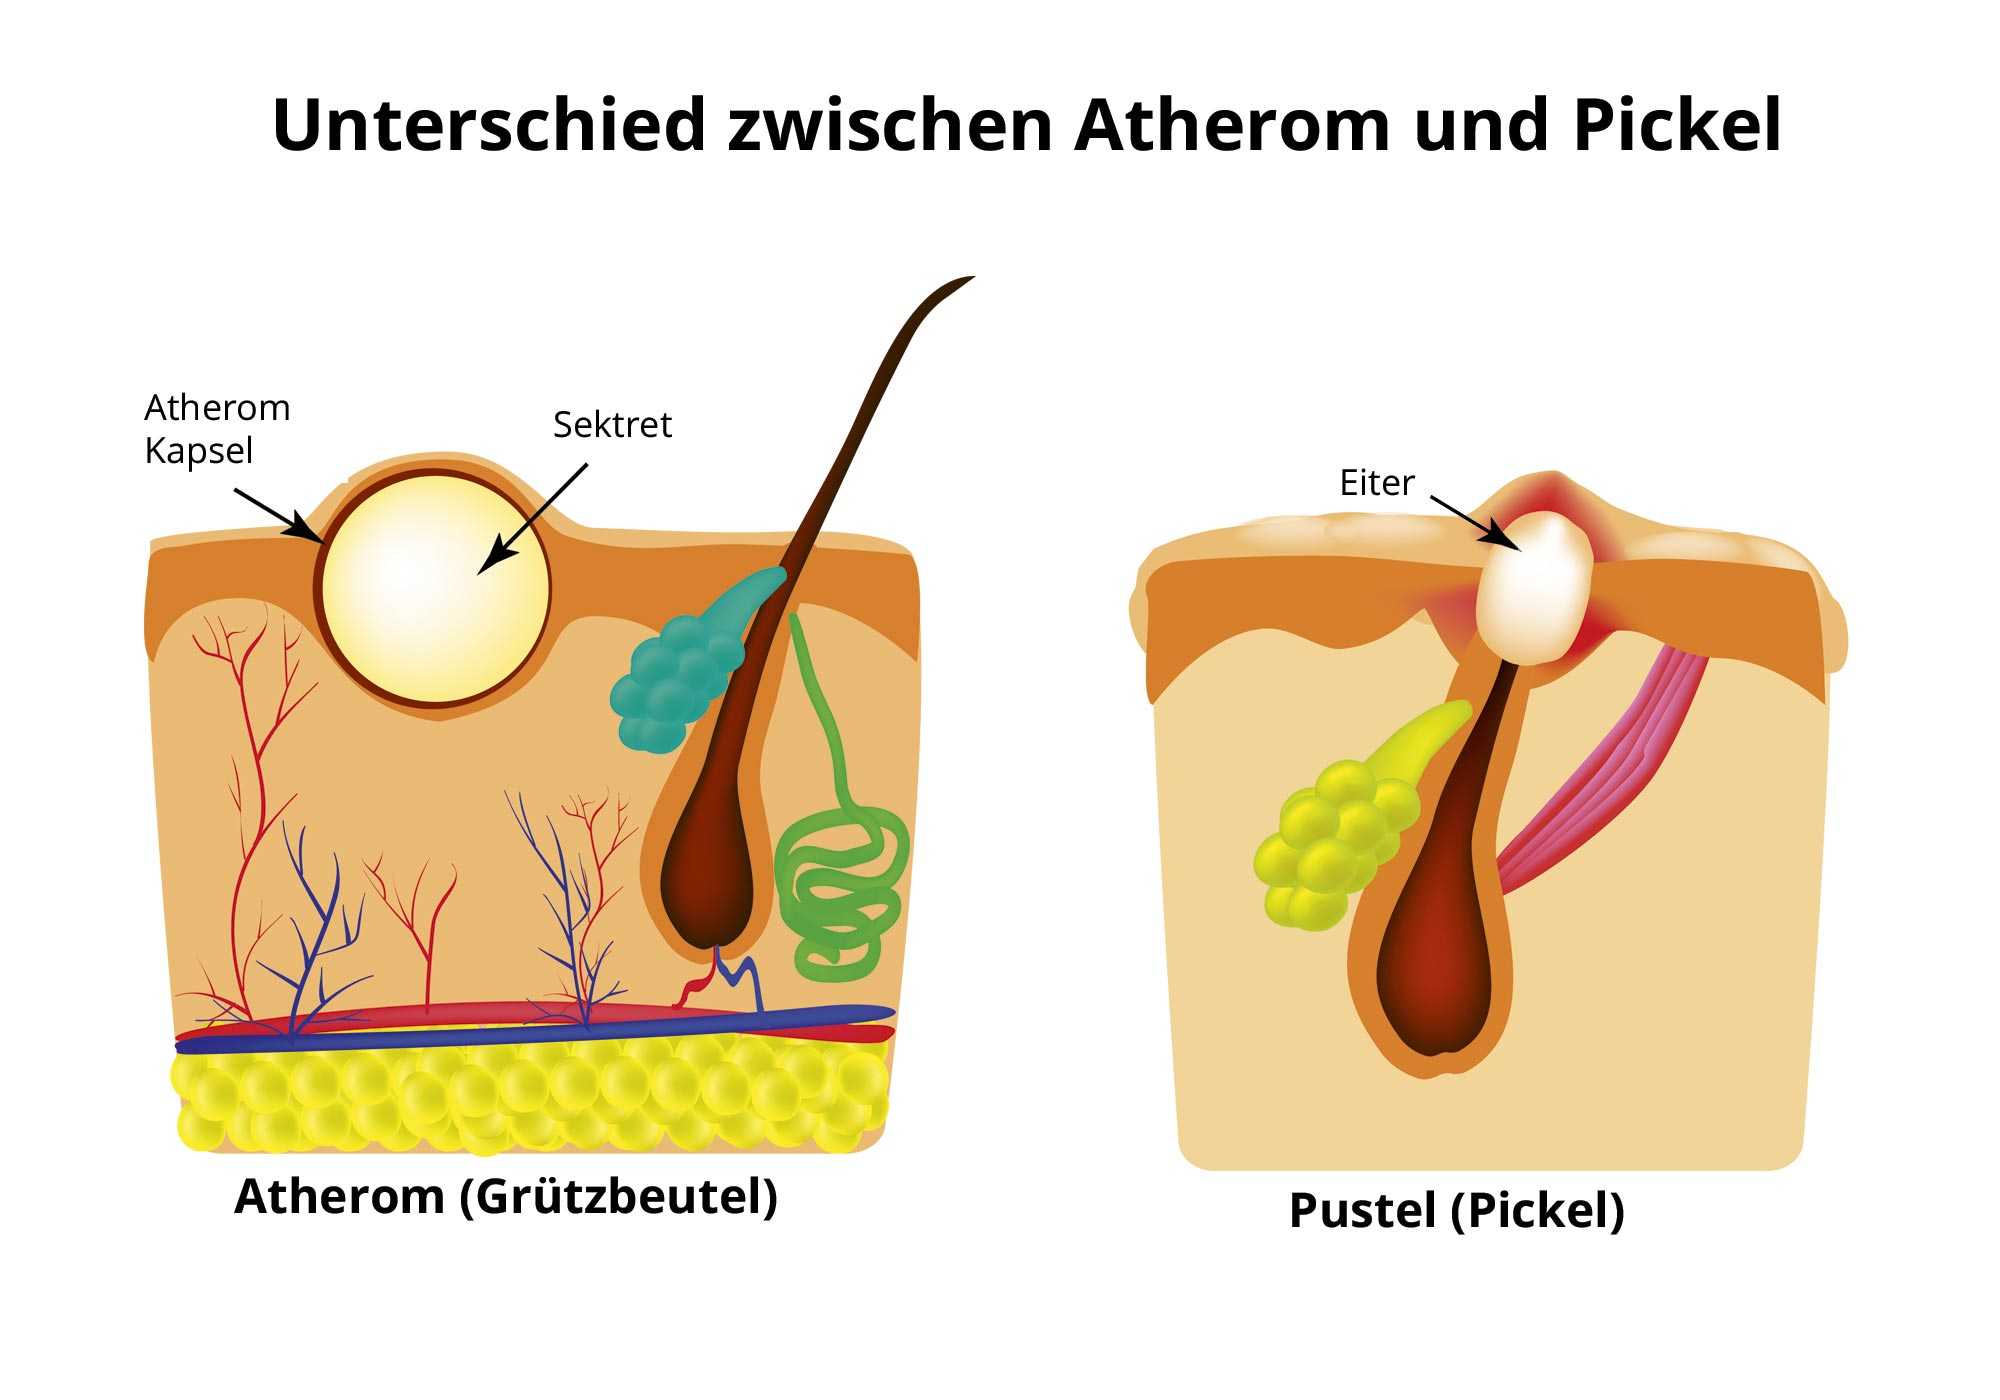 Haut - Dermatologie. ©. Unterschied zwischen Atherom und Pickel. 